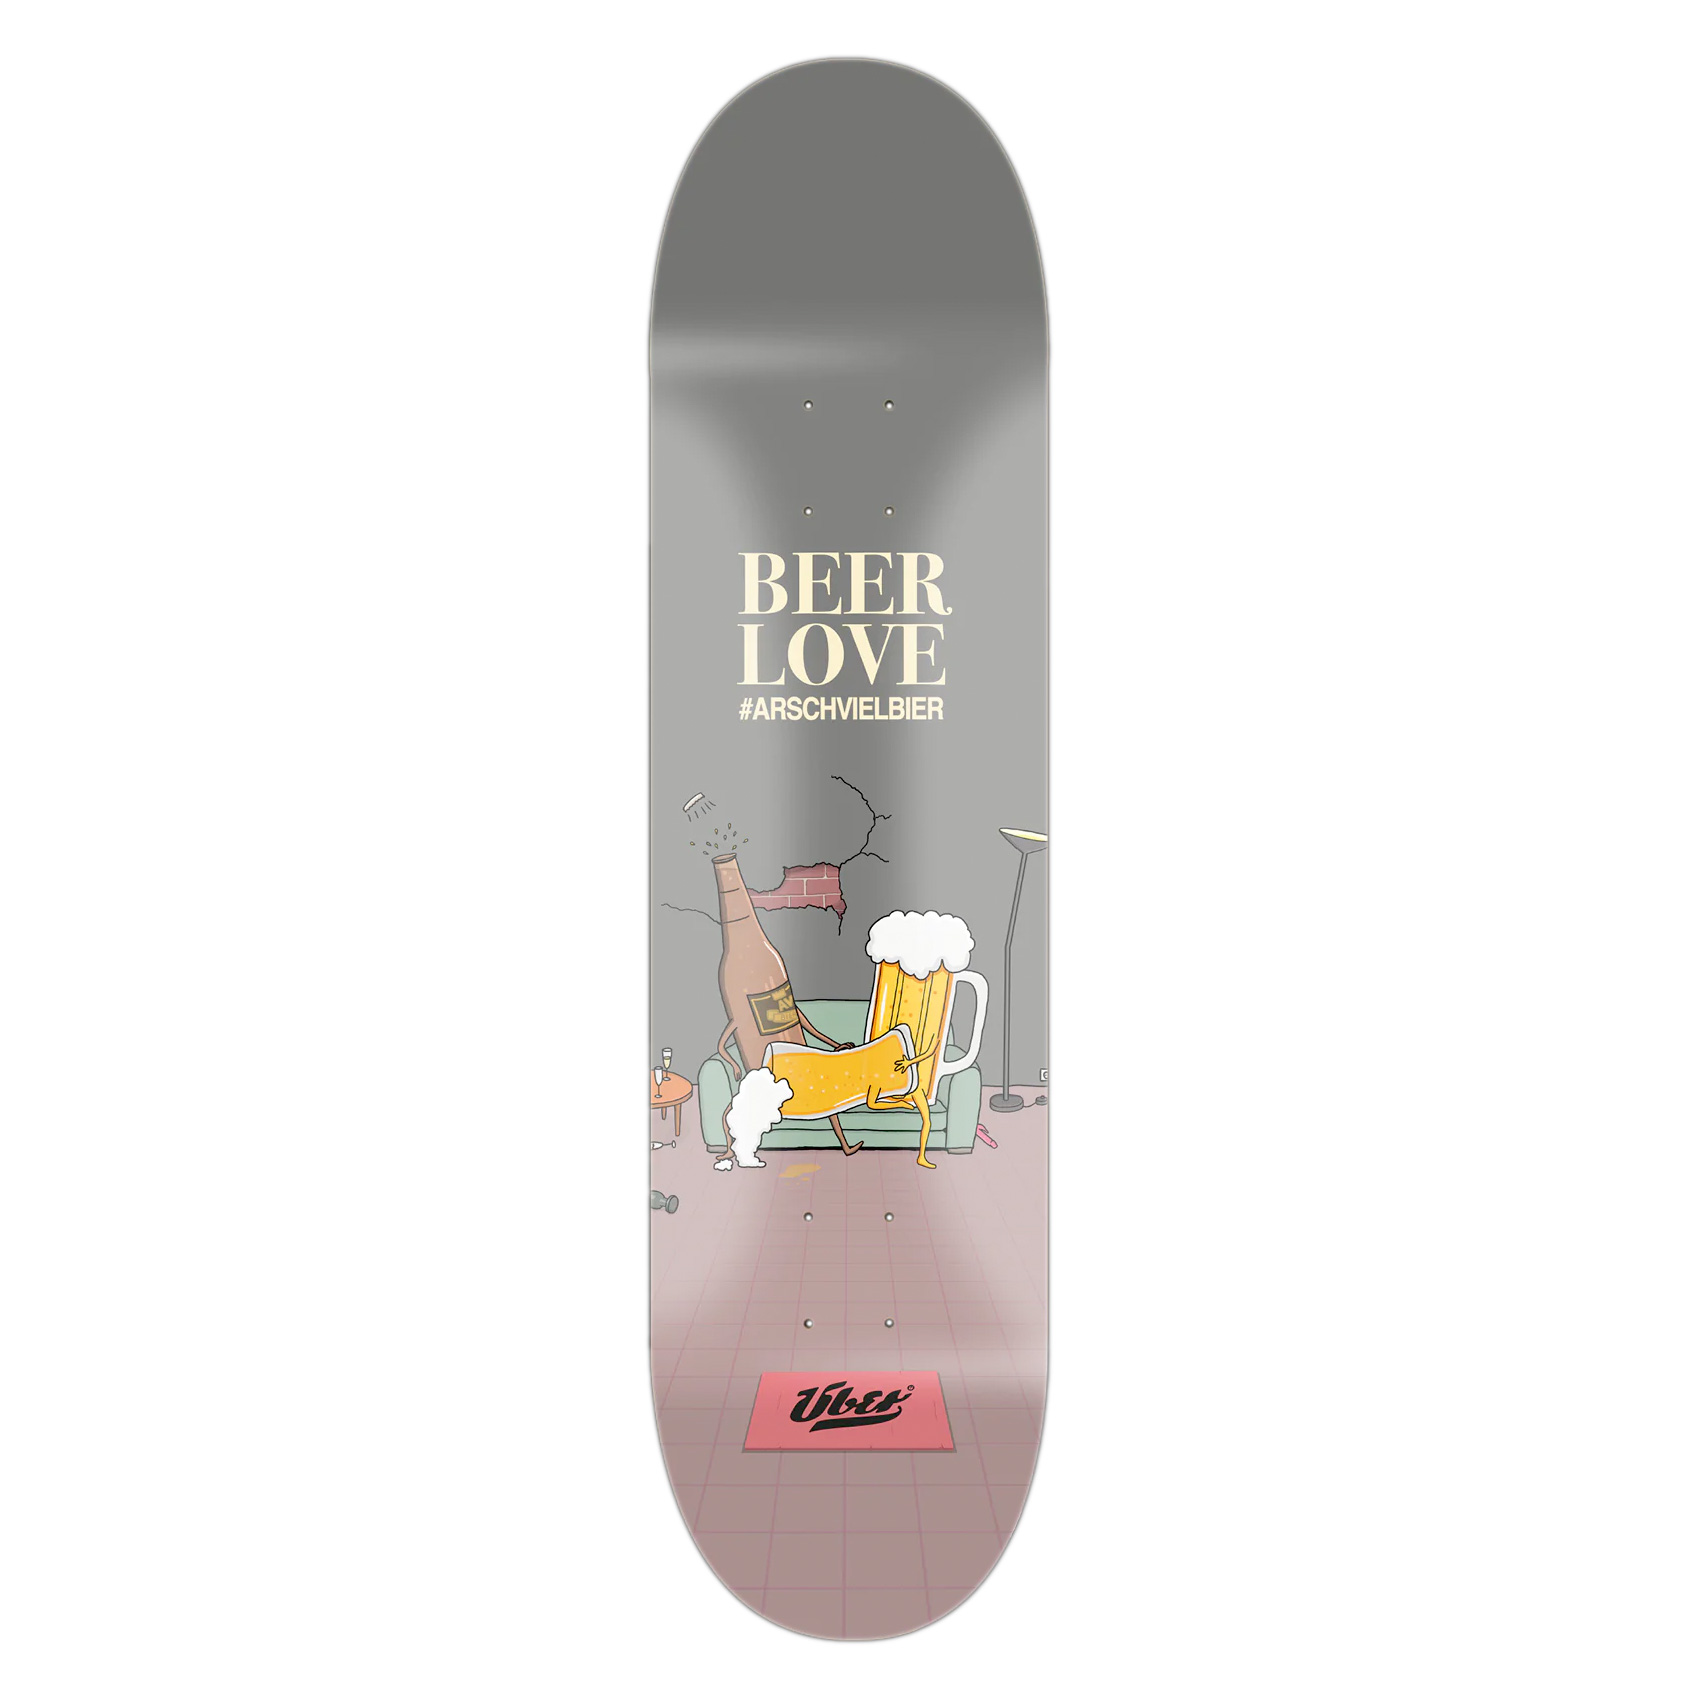 Über Skateboard Deck Beer Love 8.0"